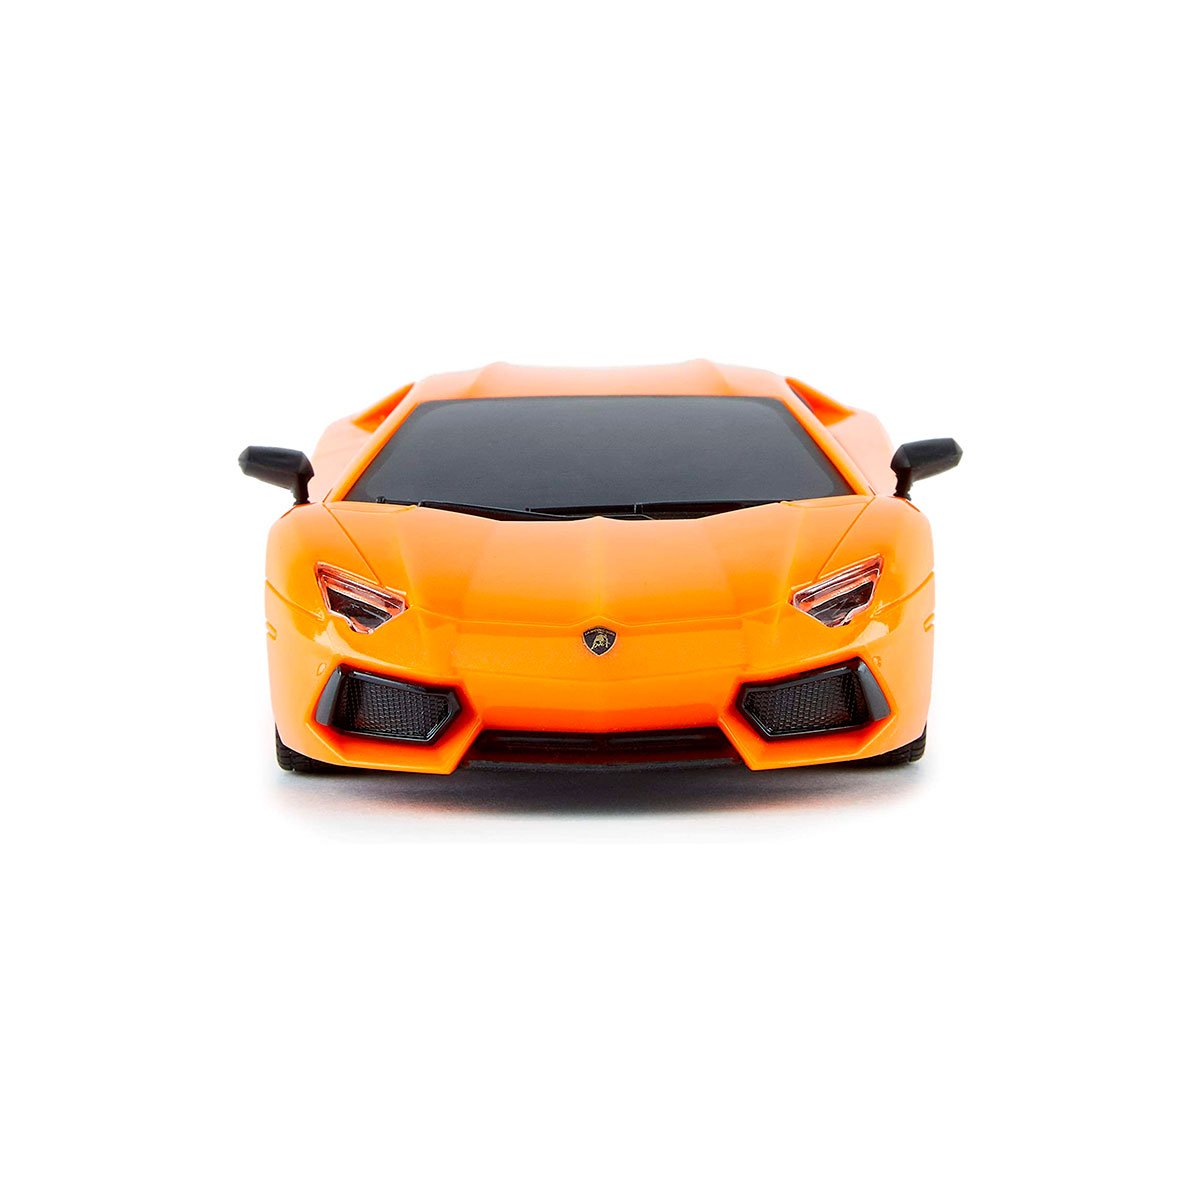 Автомобиль KS Drive на р/у Lamborghini Aventador LP 700-4, 1:24, 2.4Ghz оранжевый (124GLBO) - фото 3